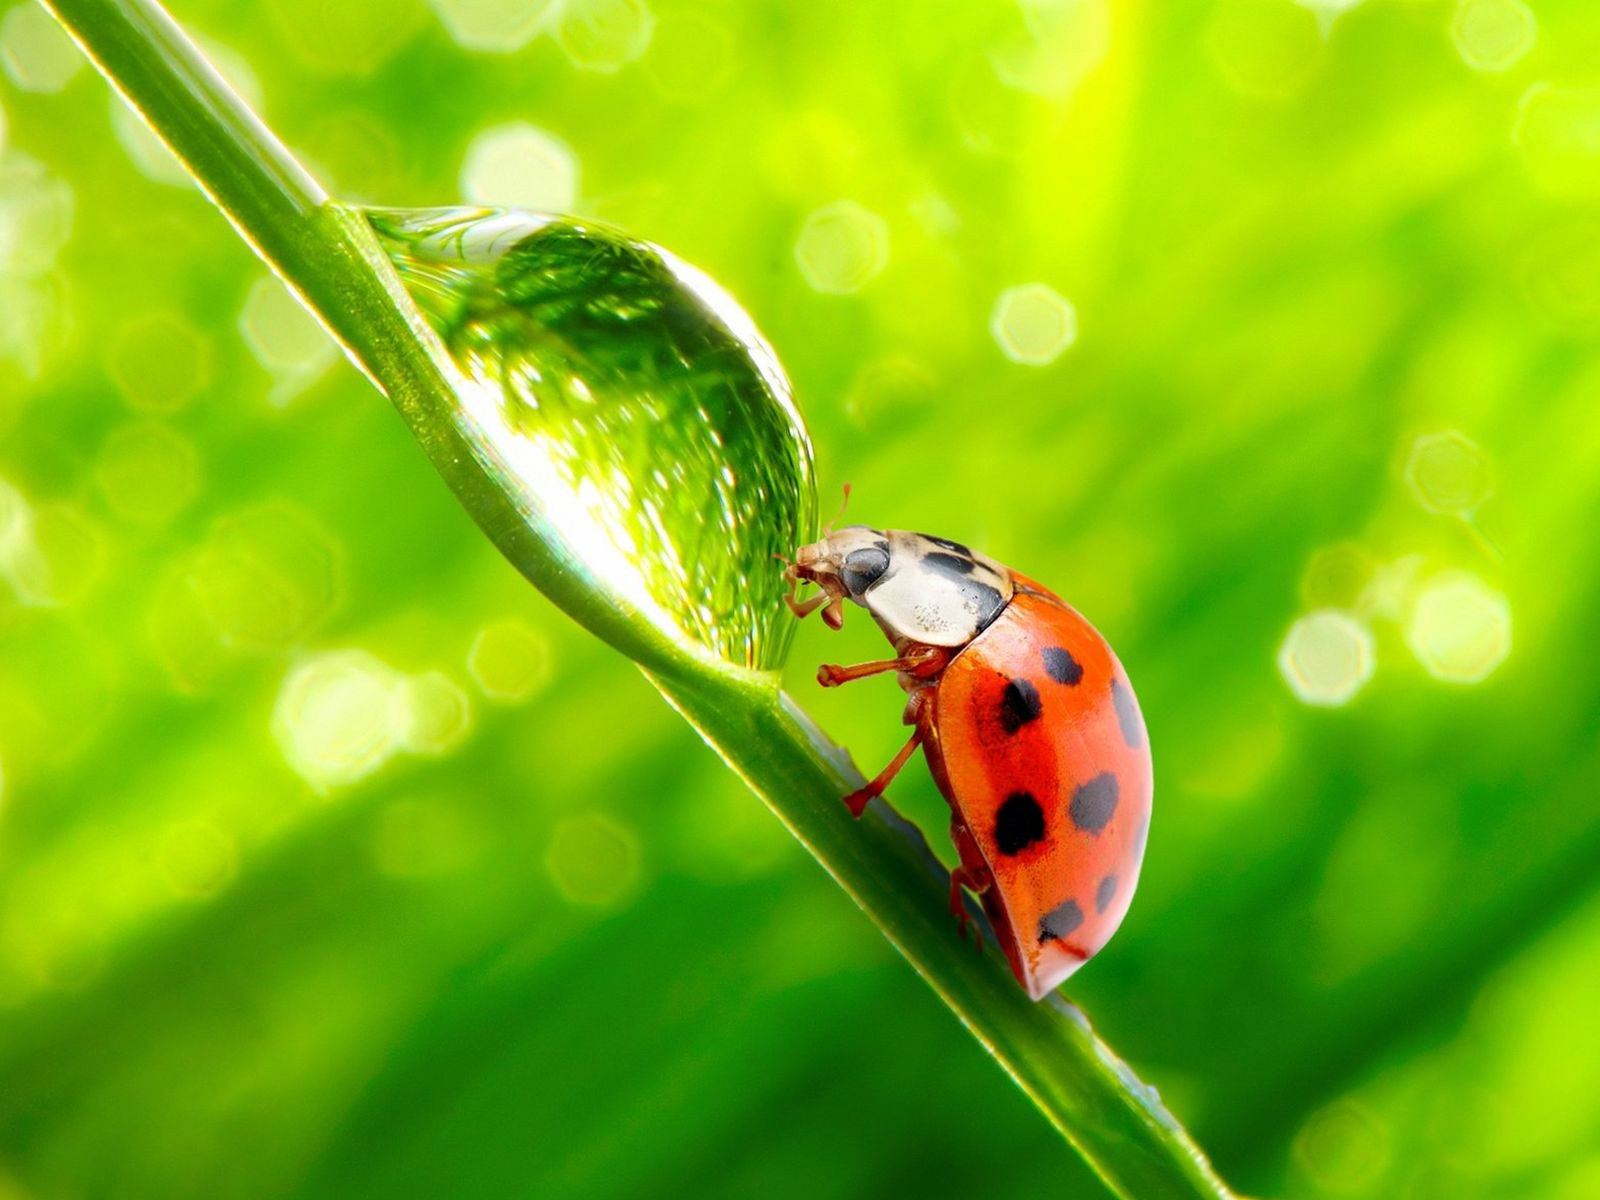 bug wallpaper,ladybug,insect,macro photography,green,beetle